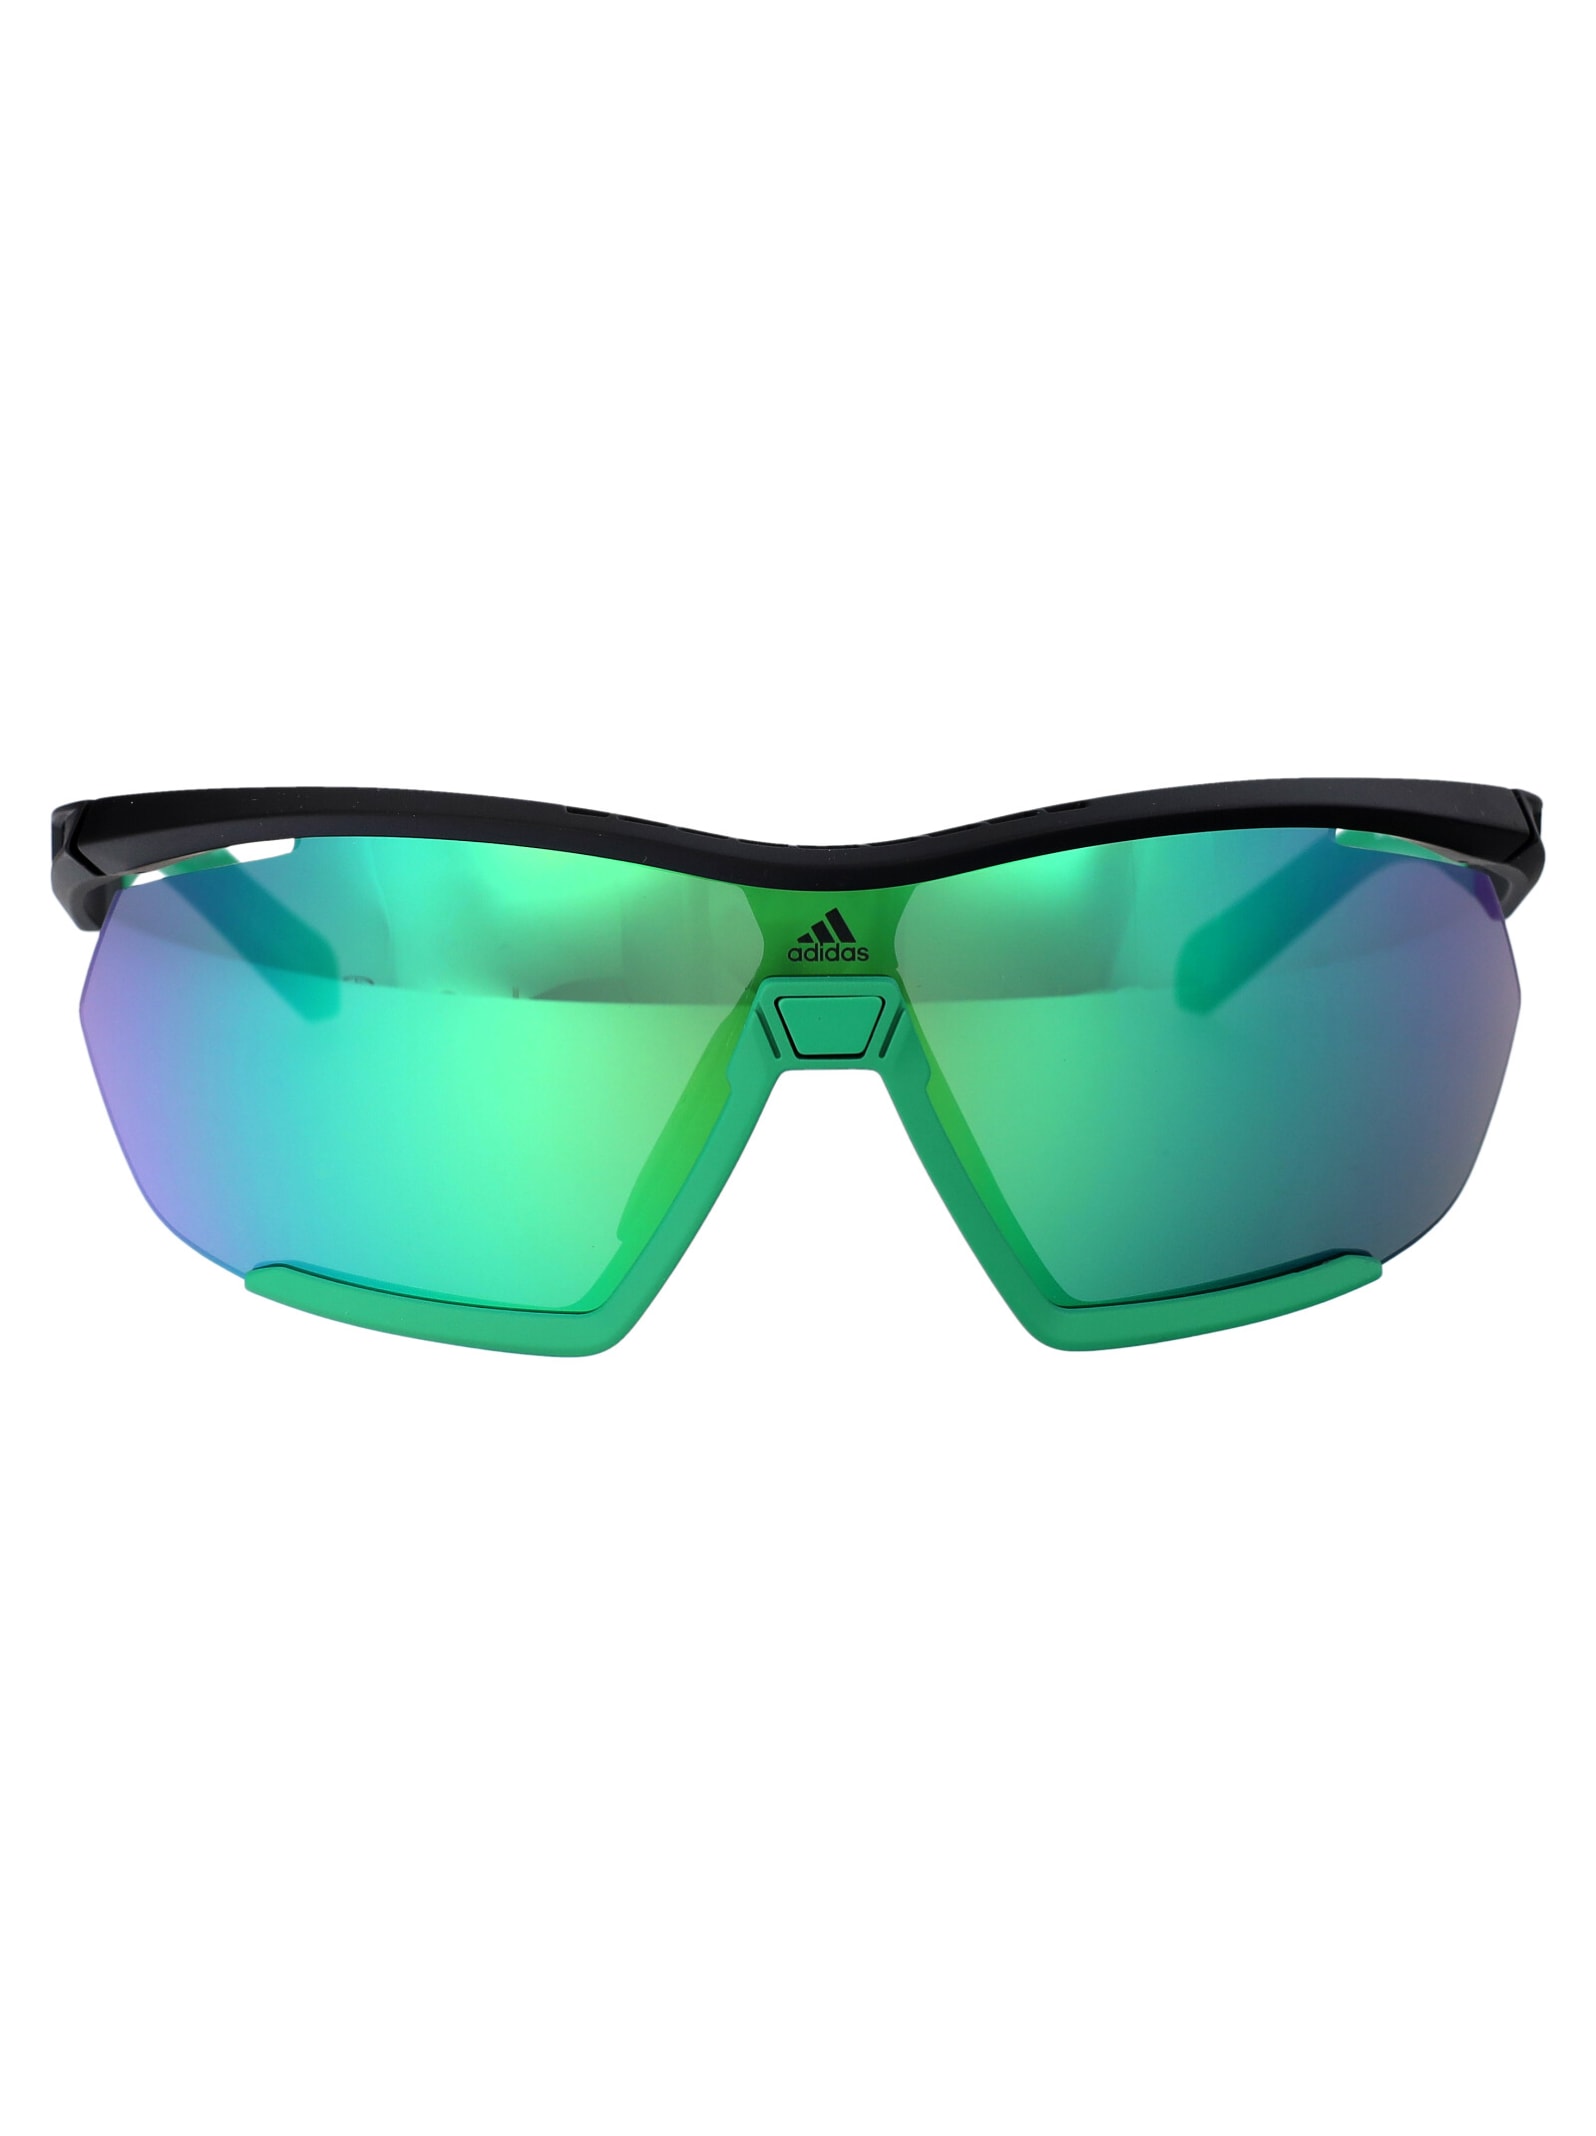 Adidas Originals Cmpt Aero Li Sunglasses In 05q Nero/altro/verde Specchiato